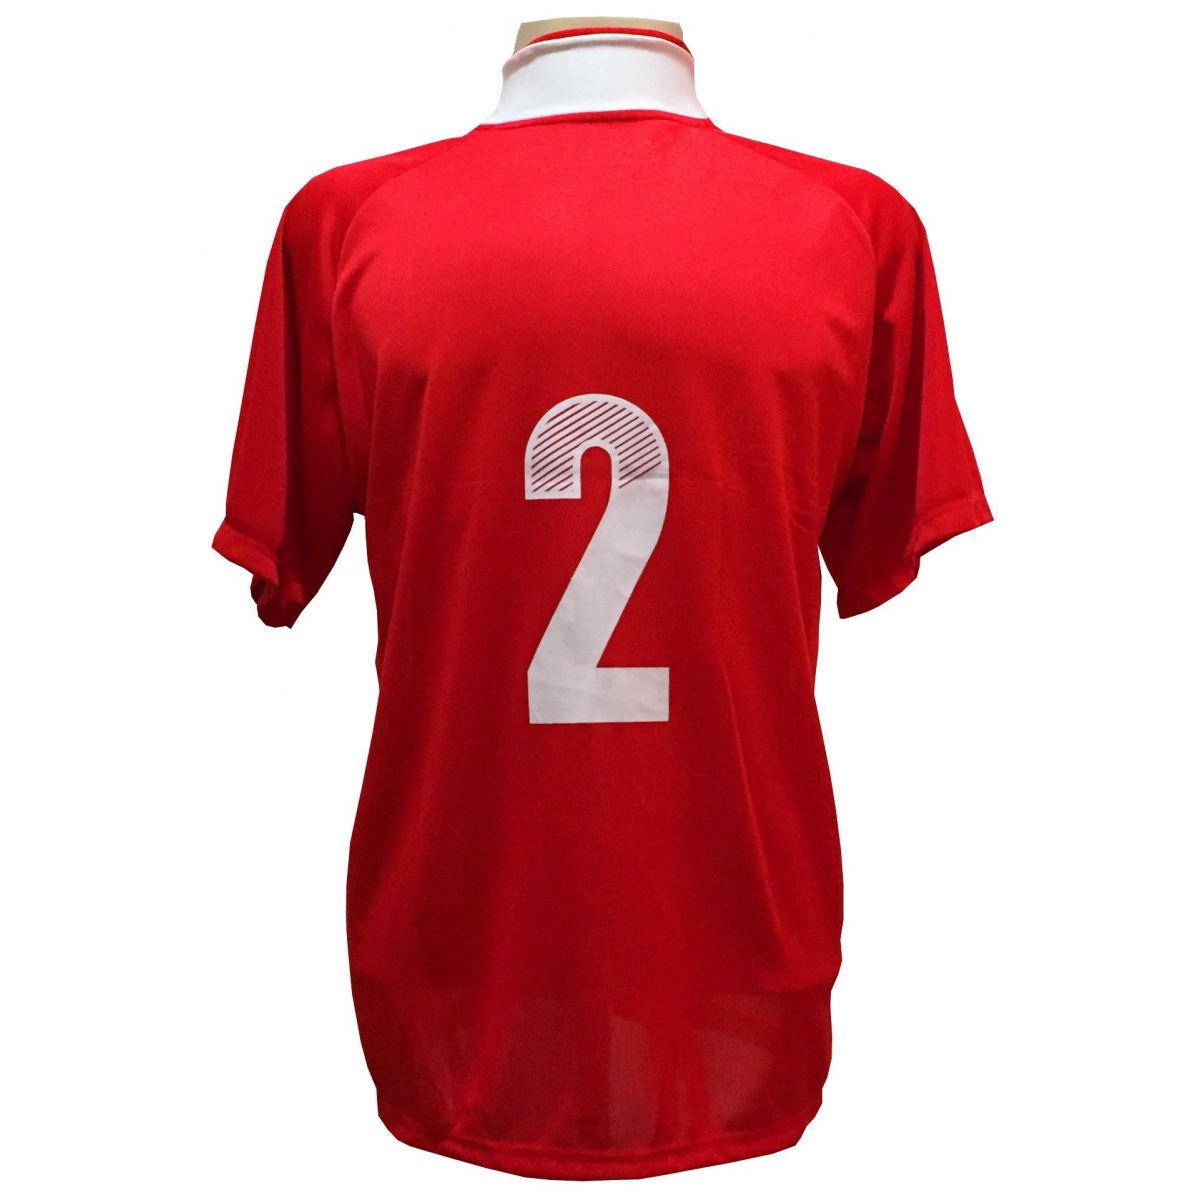 Uniforme Esportivo com 12 camisas modelo Milan Vermelho/Branco + 12 calções modelo Madrid Vermelho + Brindes